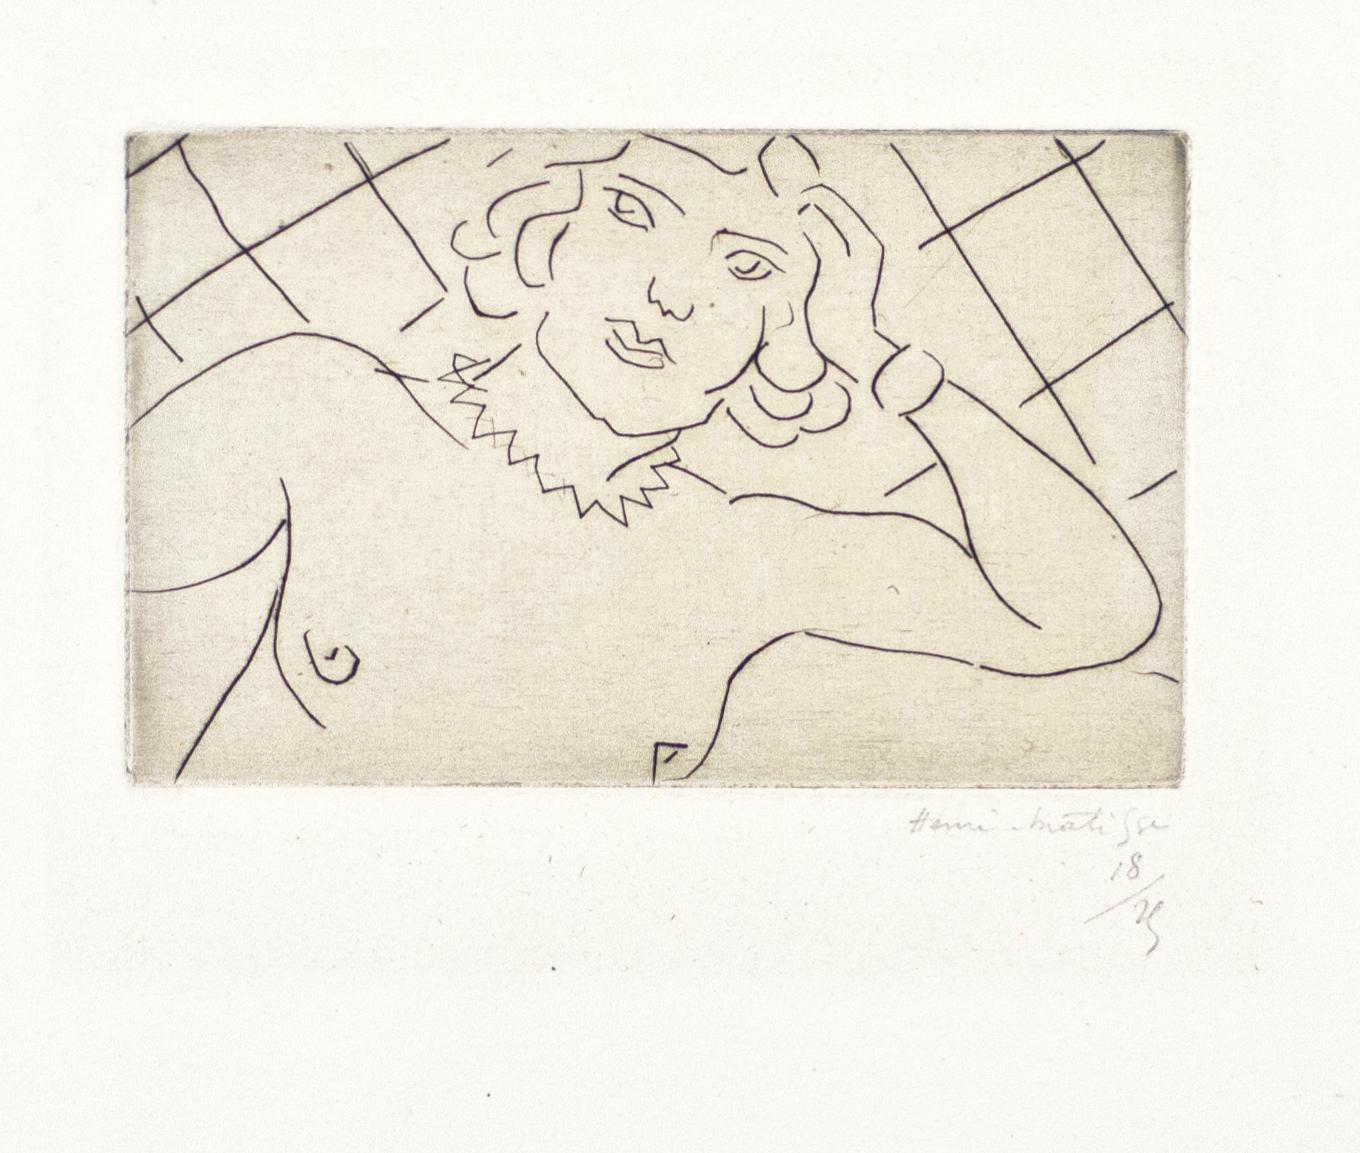 Torse, Fond à Losanges - Kaltnadel auf China von H. Matisse, 1929